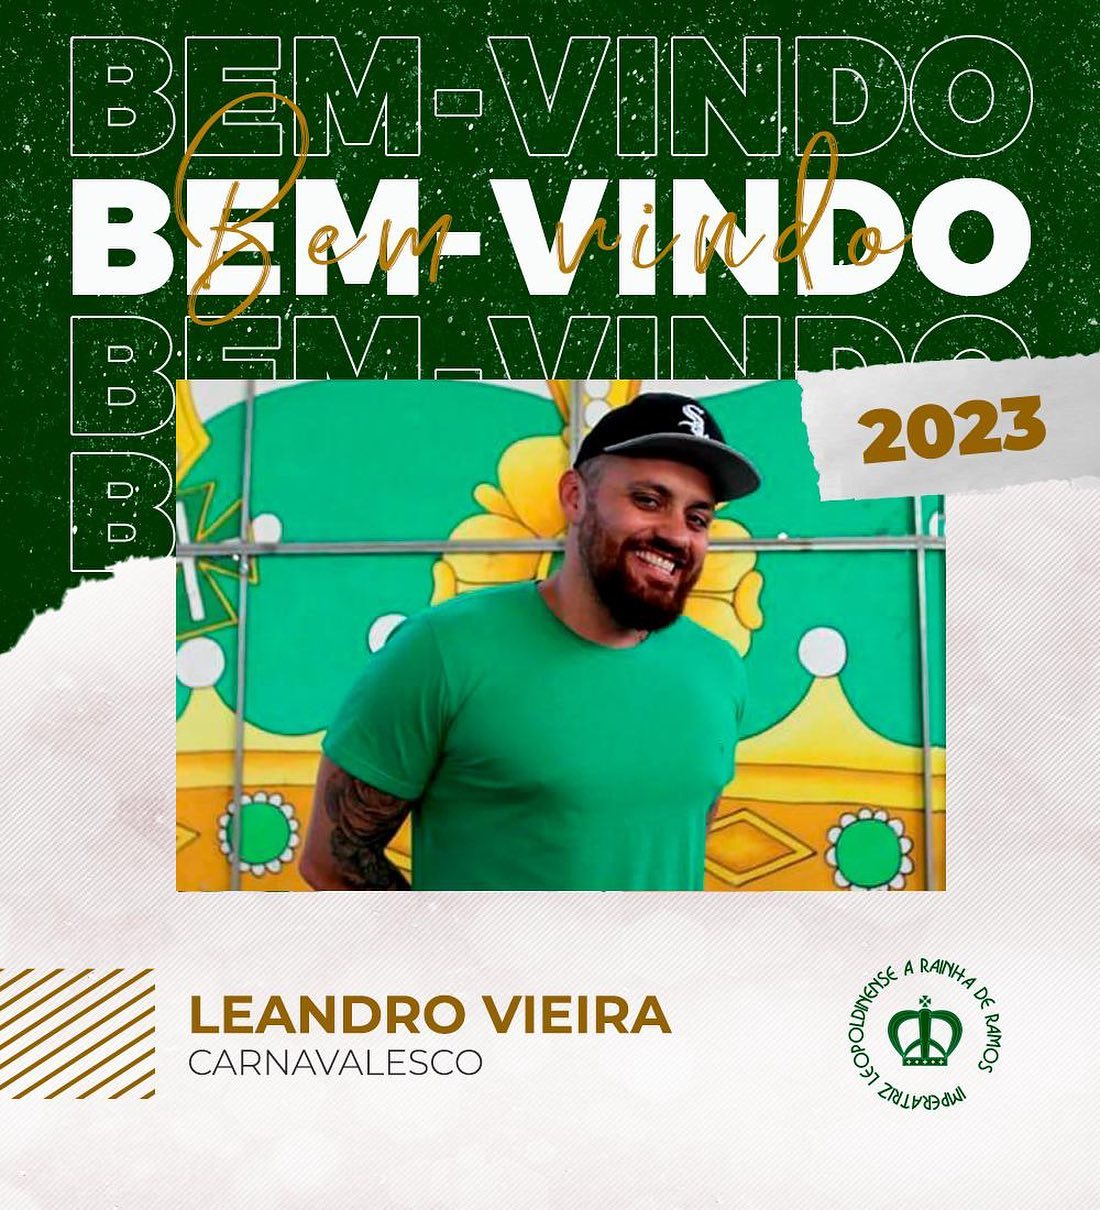 CARNAVALESCO LEANDRO VIEIRA É DA IMPERATRIZ LEOPOLDINENSE EM 2023